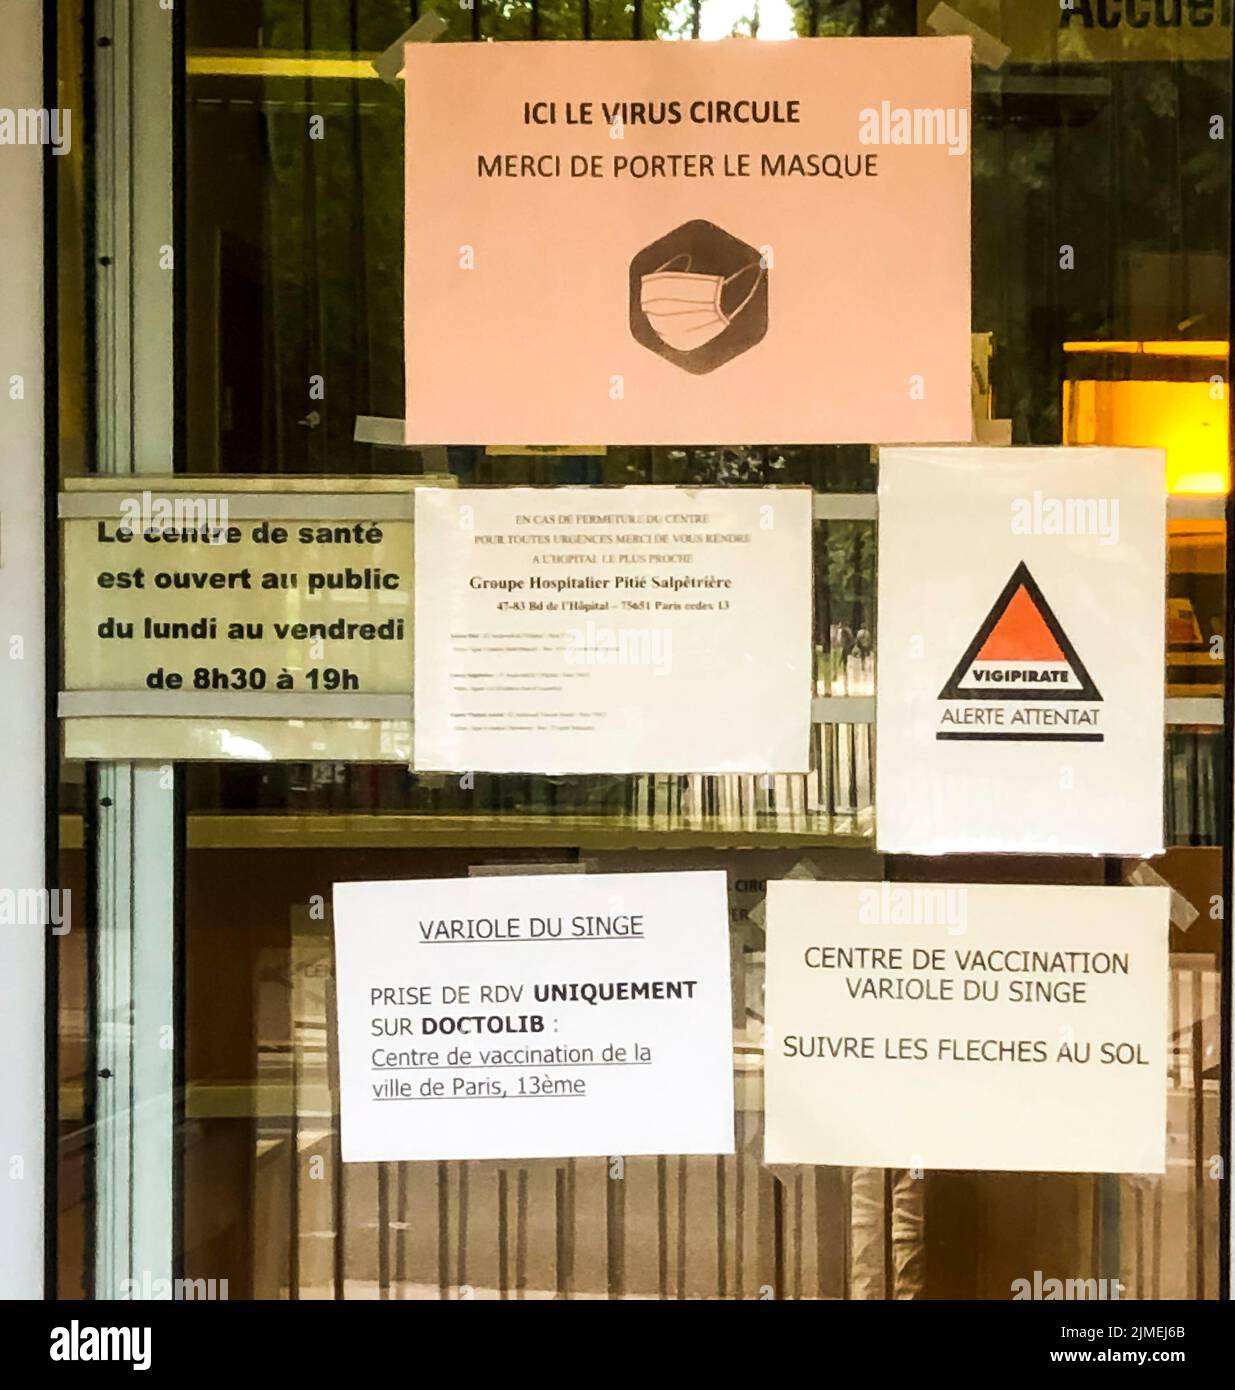 París, Francia, Centro Francés de Vacunación contra la viruela del simio, Centre de Santé Edison, Detalle, Señalización, Frente Foto de stock